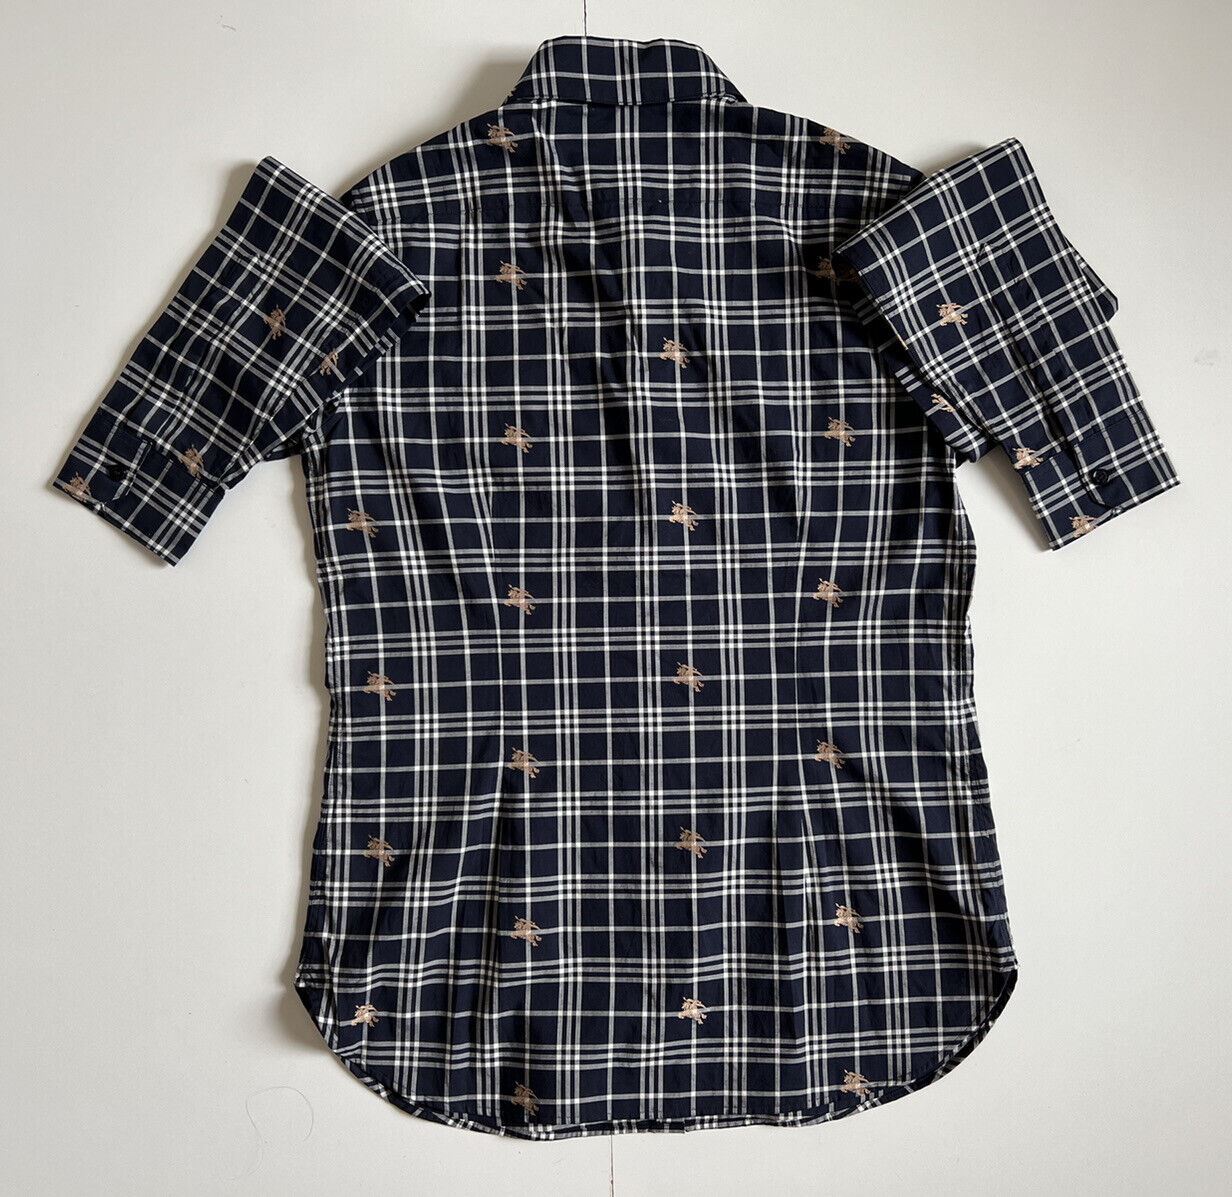 Женская темно-синяя рубашка на пуговицах в клетку Burberry стоимостью 350 долларов NWT 2 США (4 Великобритании) 